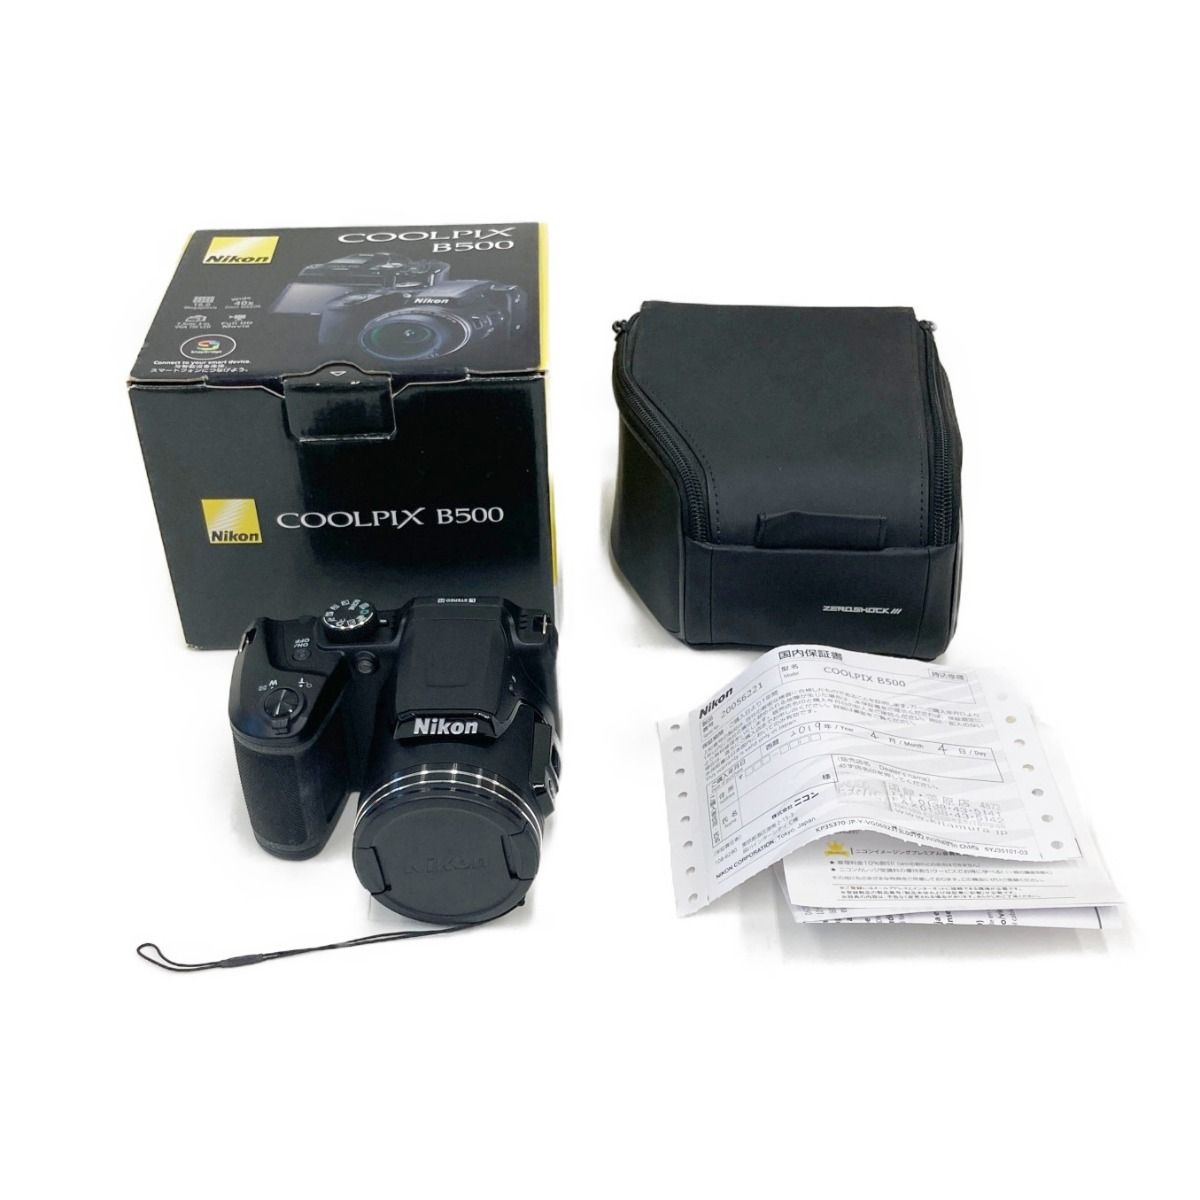 〇〇Nikon ニコン コンパクトデジタルカメラ COOLPIX B500 ブラック